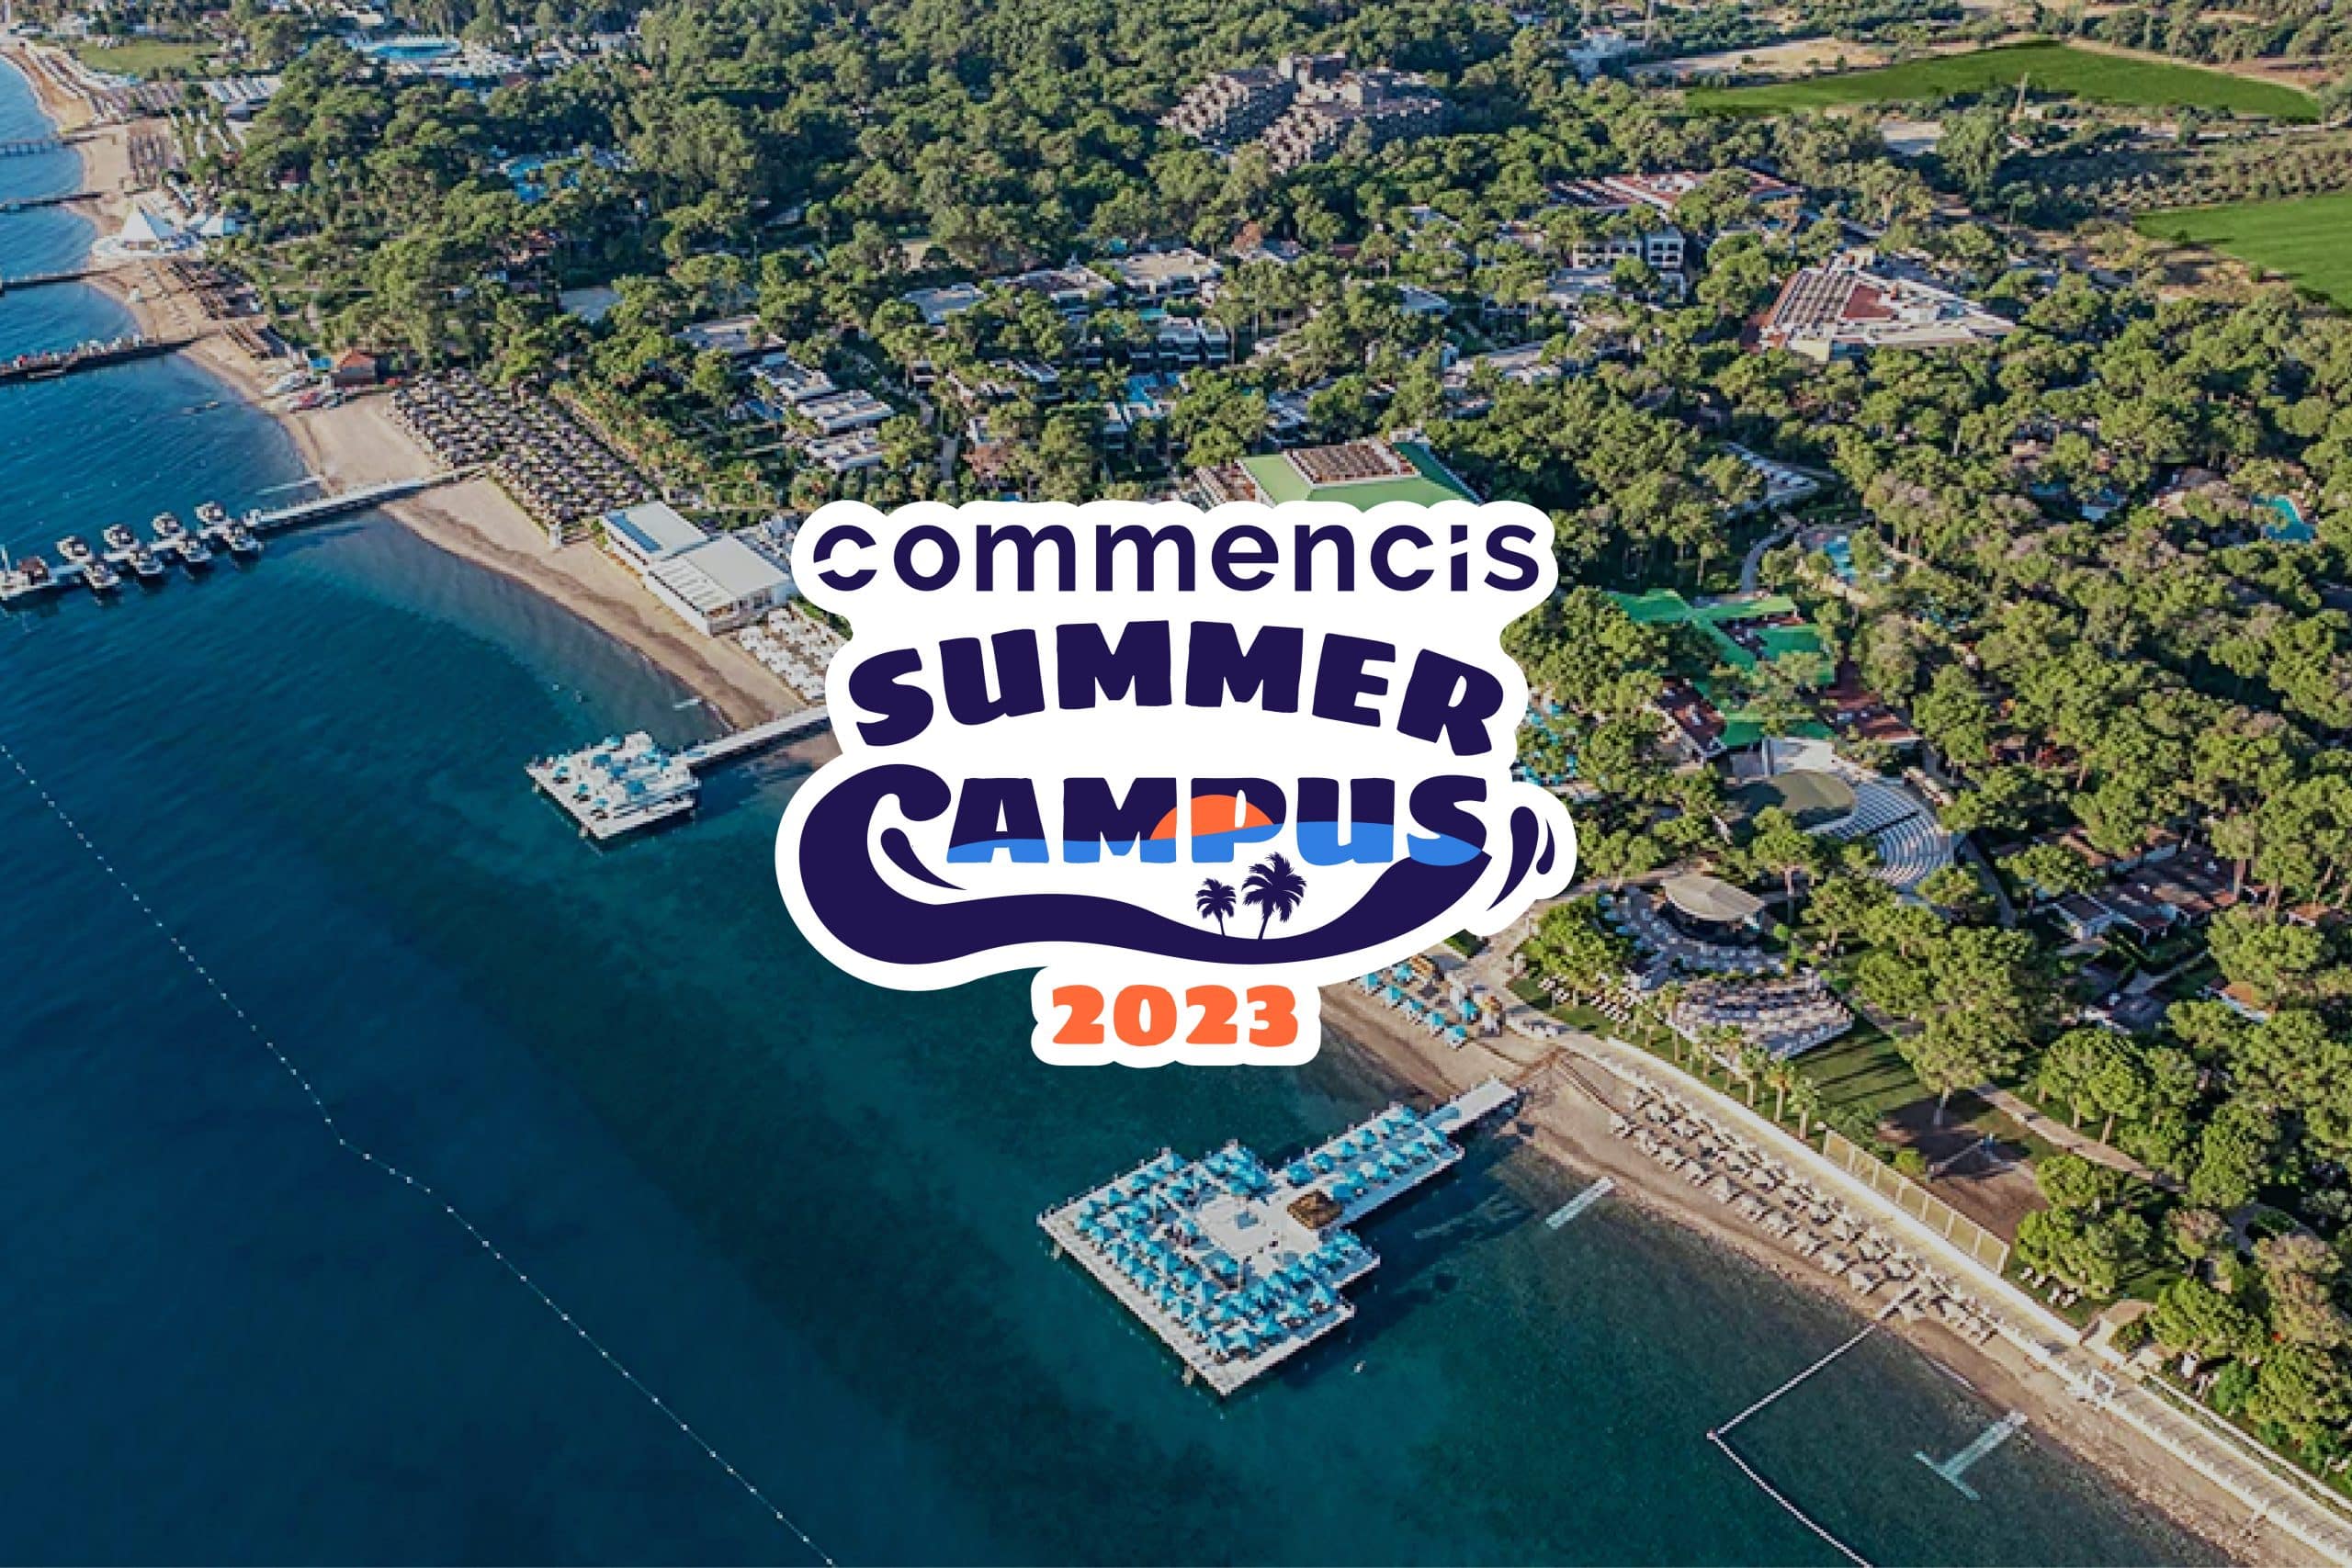 Commencis Summer Campus 2023